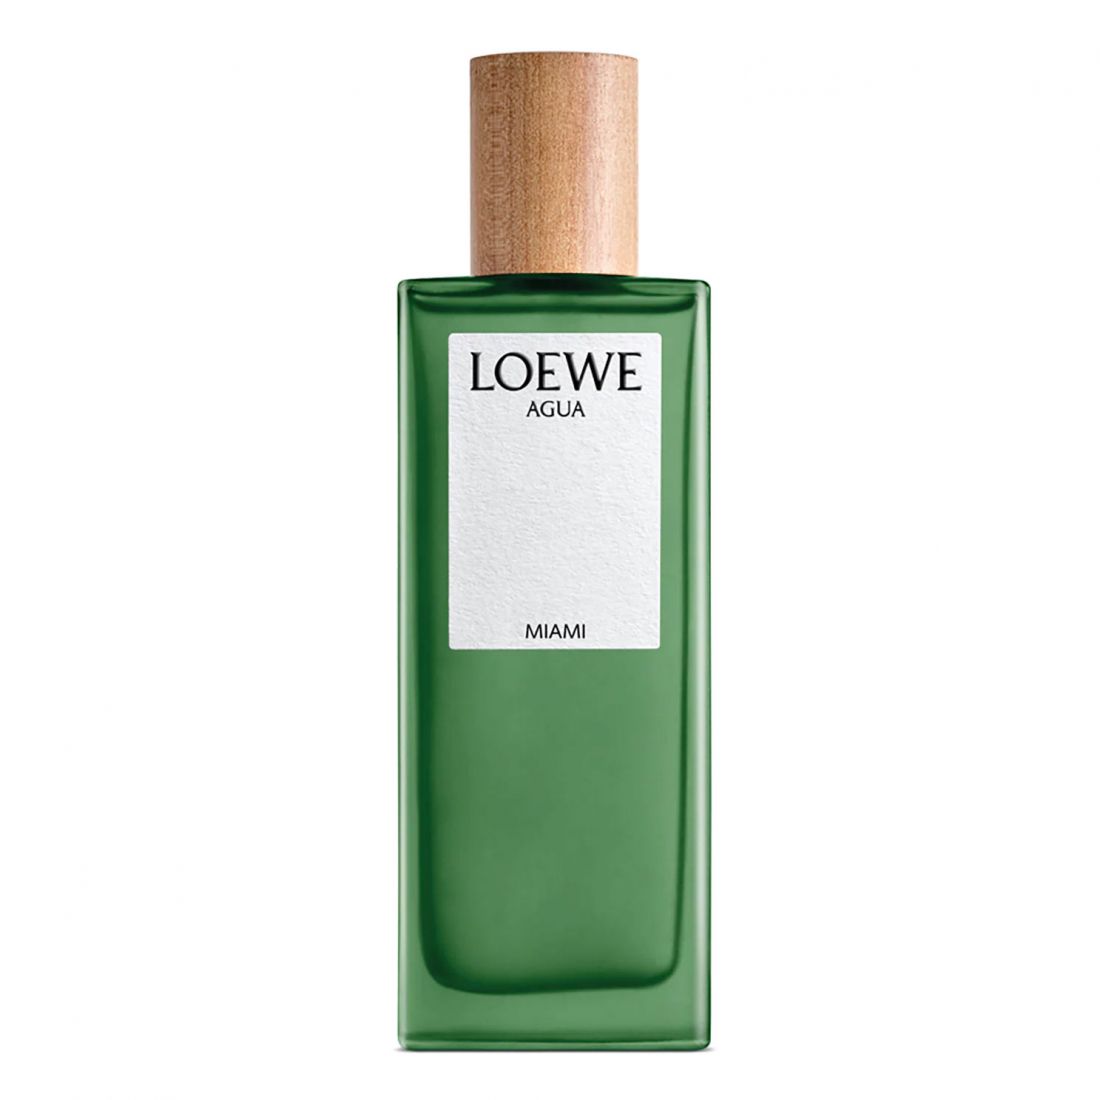 Loewe - Eau de toilette 'Agua de Loewe Miami' - 100 ml